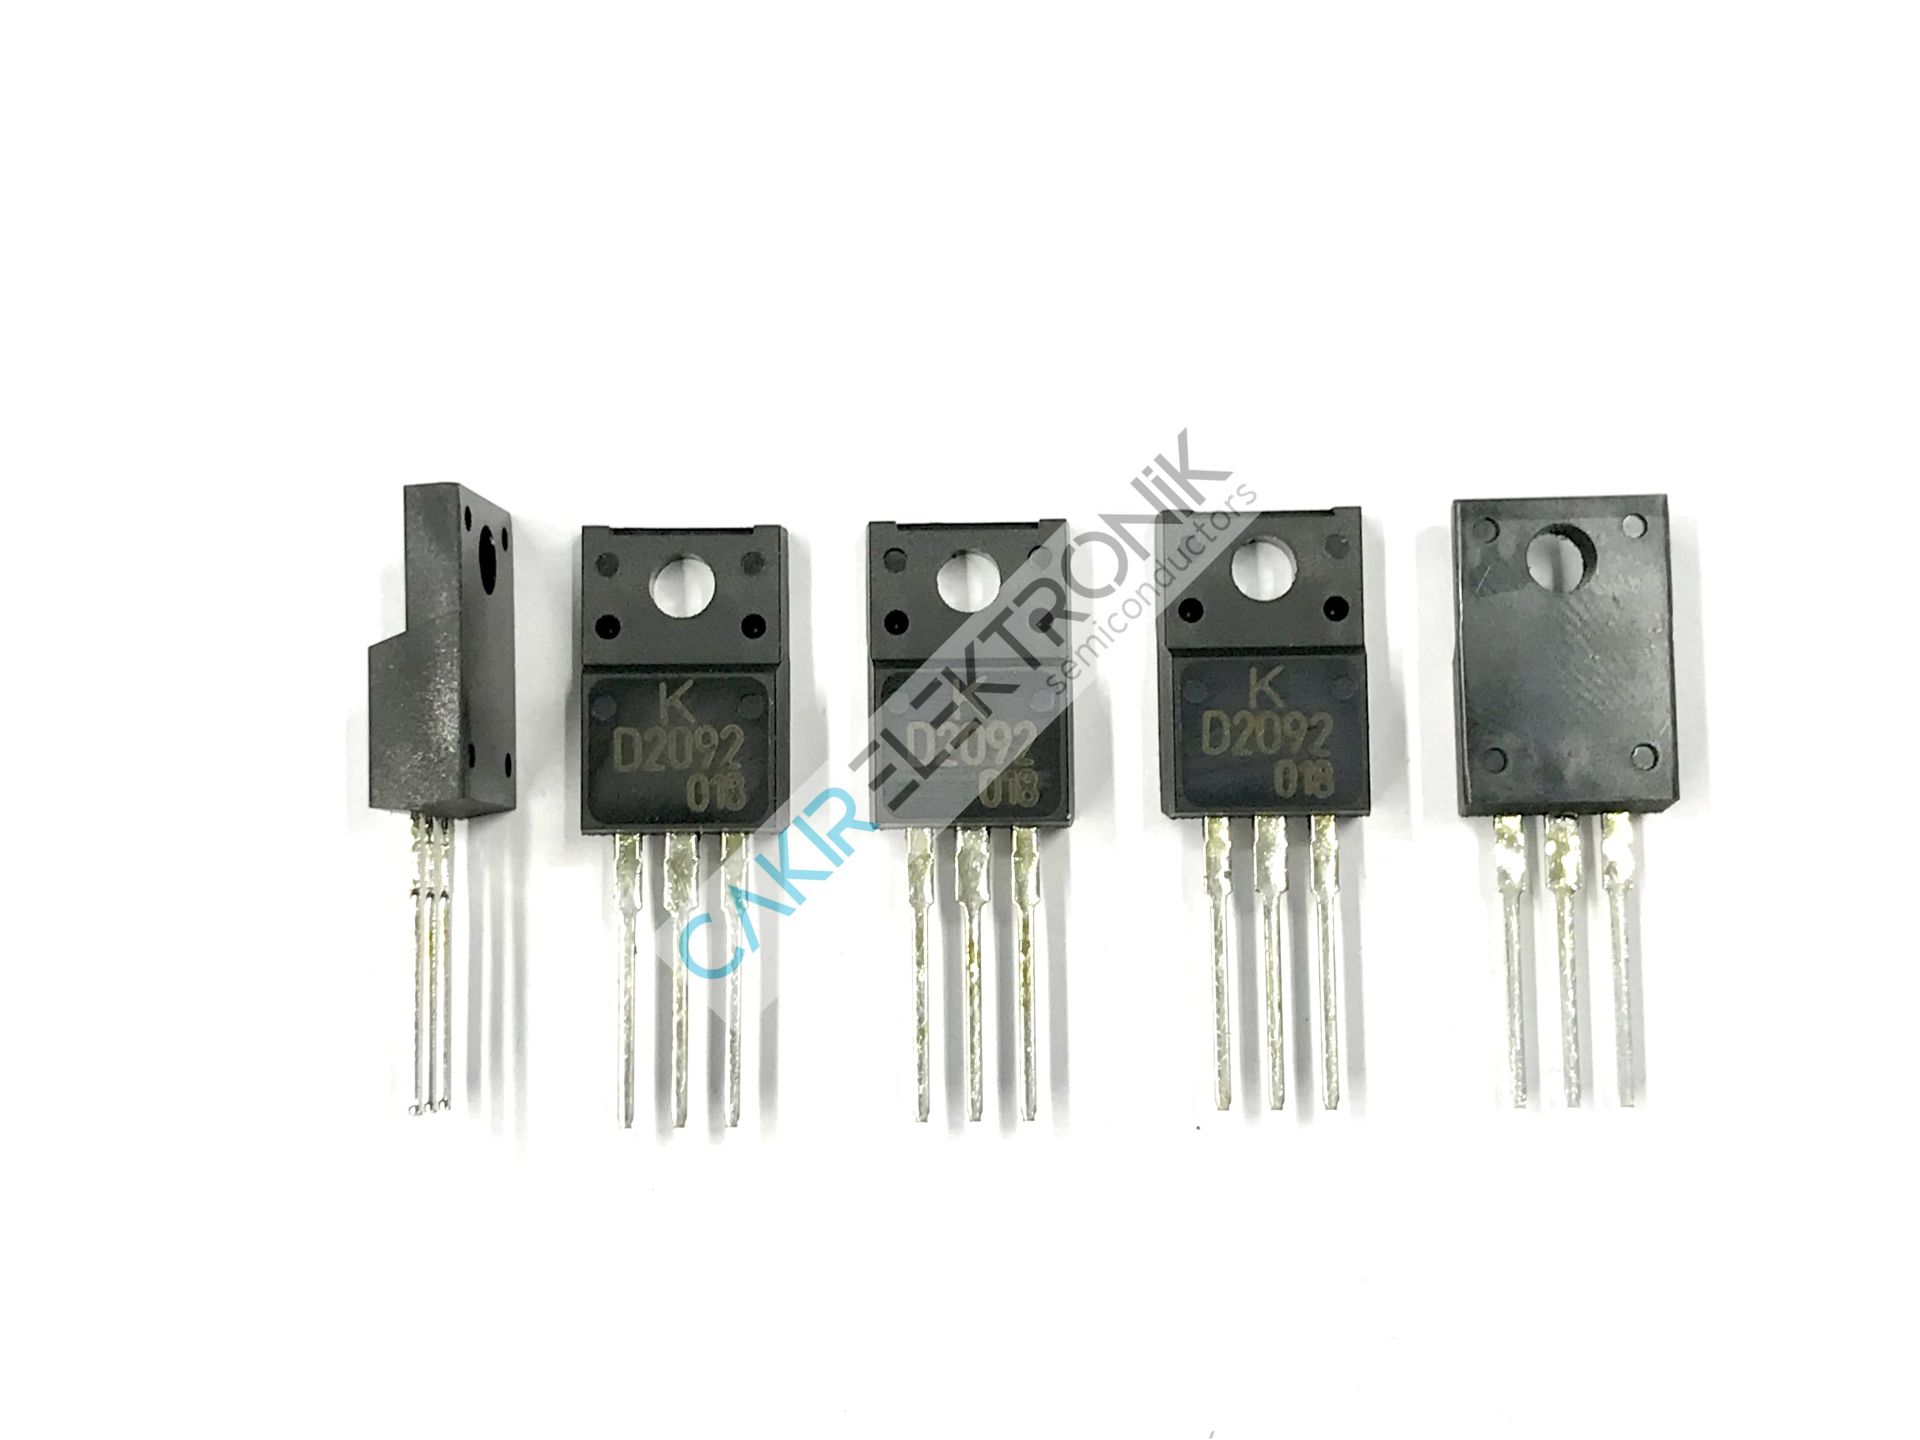 KTD2092-U/PF - KTD2092 - 2SD2092 - D2092 TO220F 60V 3A 25W Silicon NPN Epitaxial Type Transistor-KEC-U-3